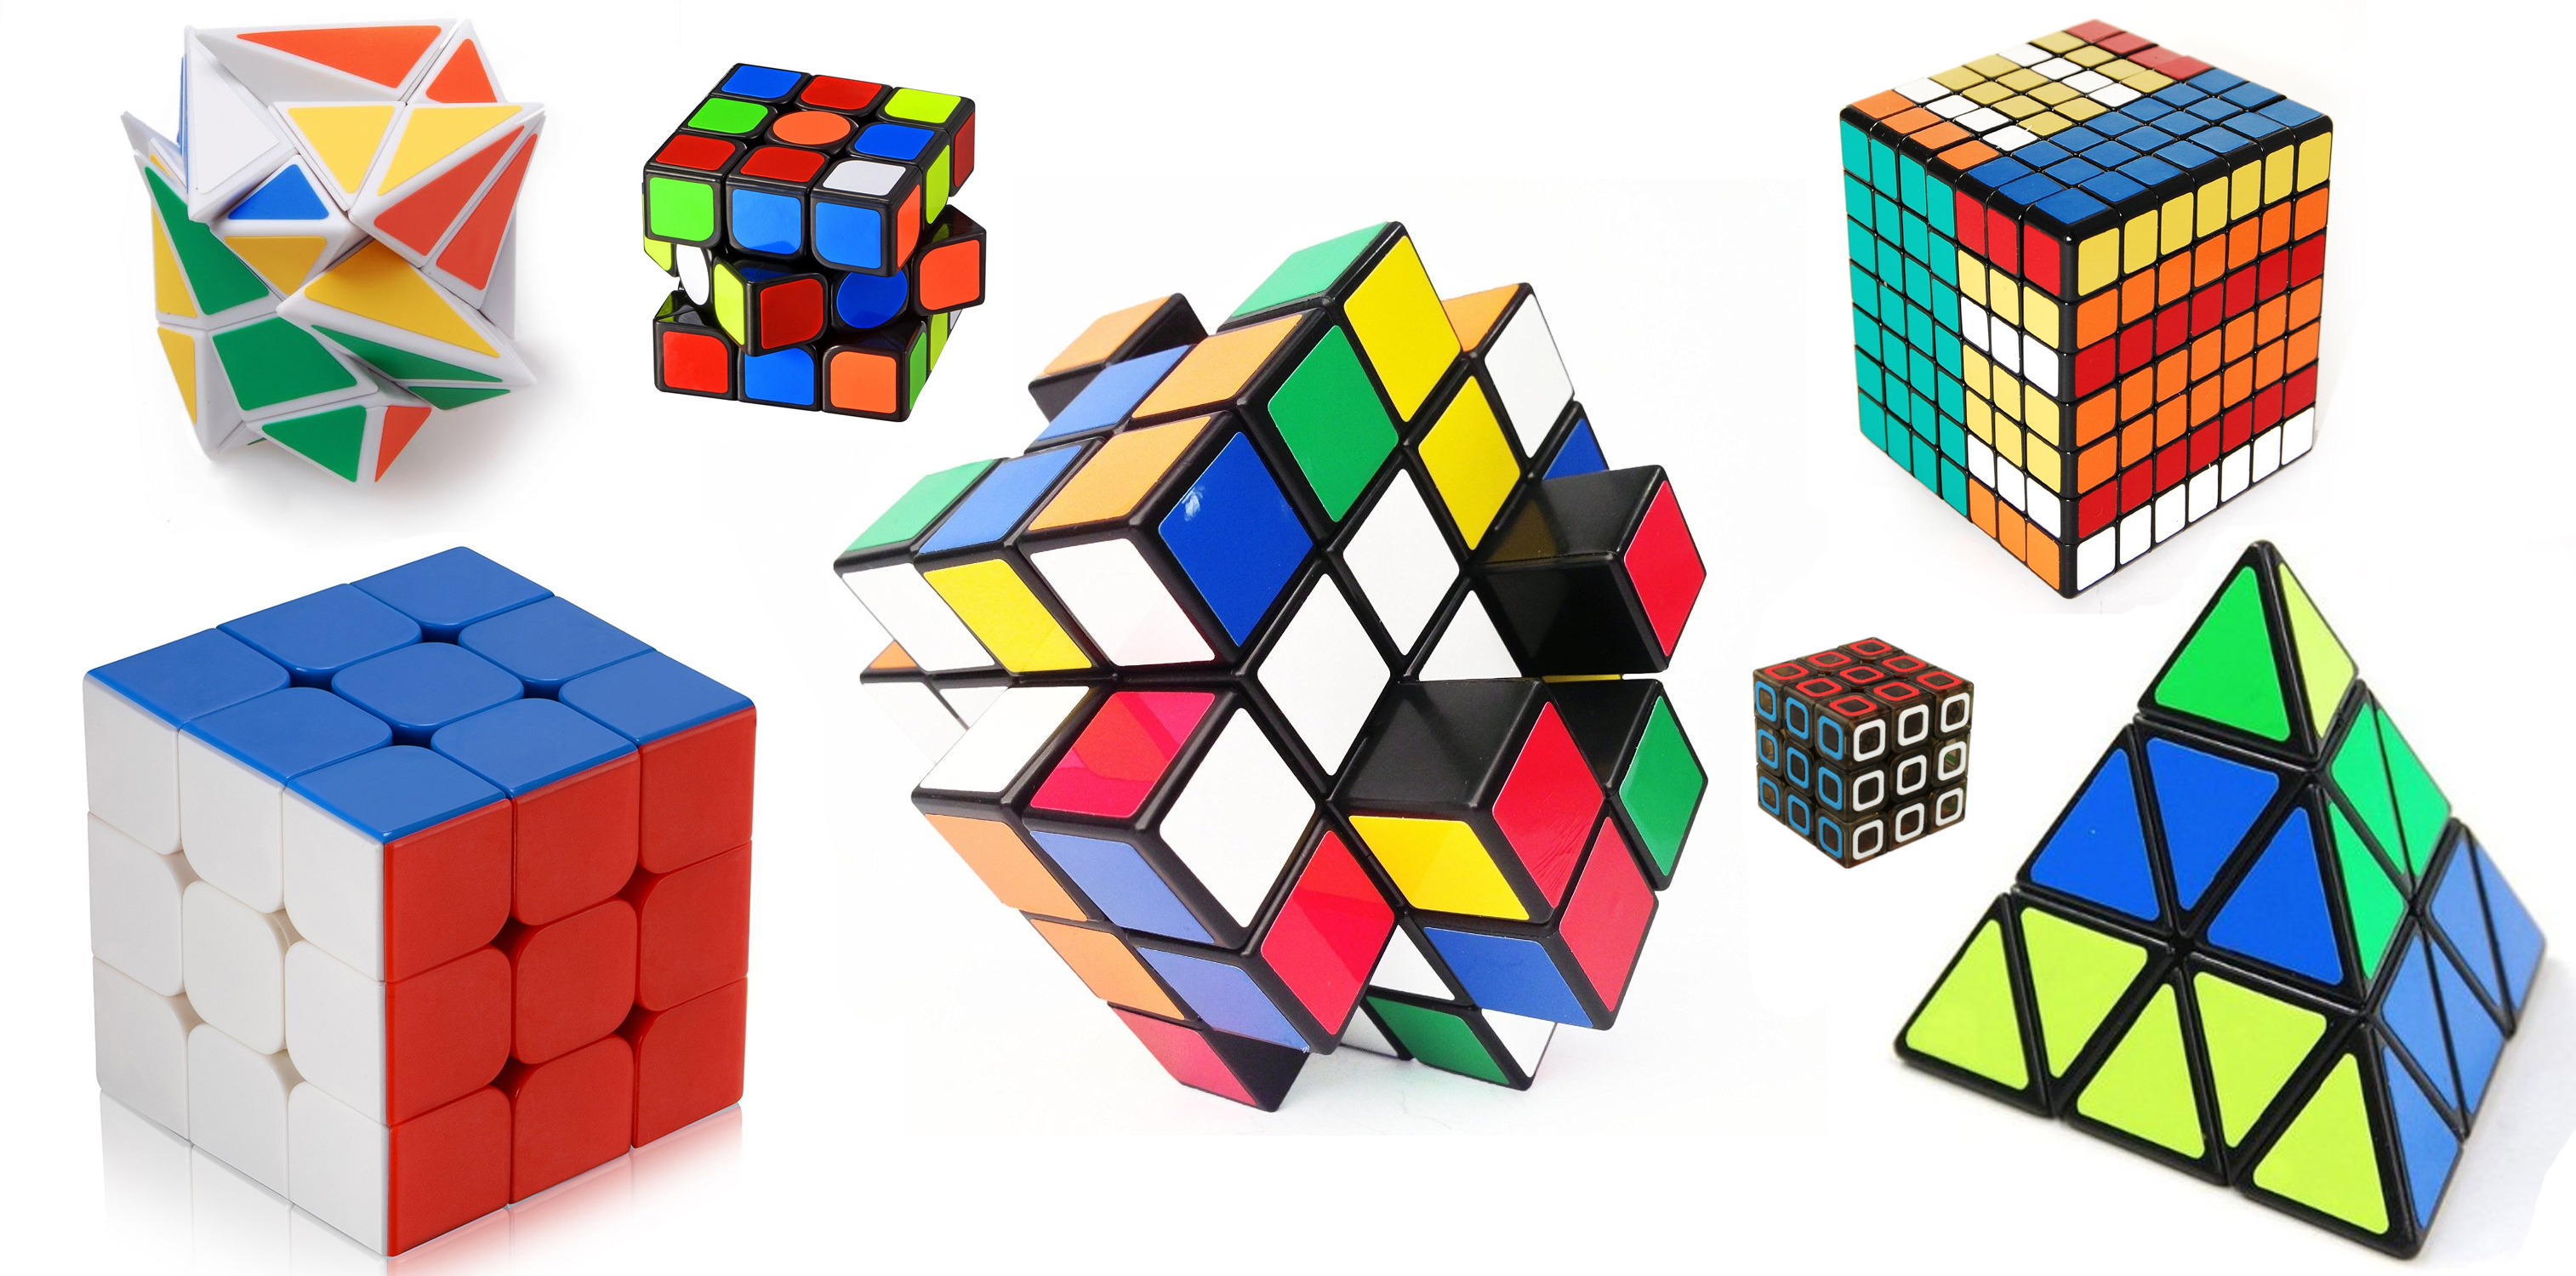 kinds of rubix cube